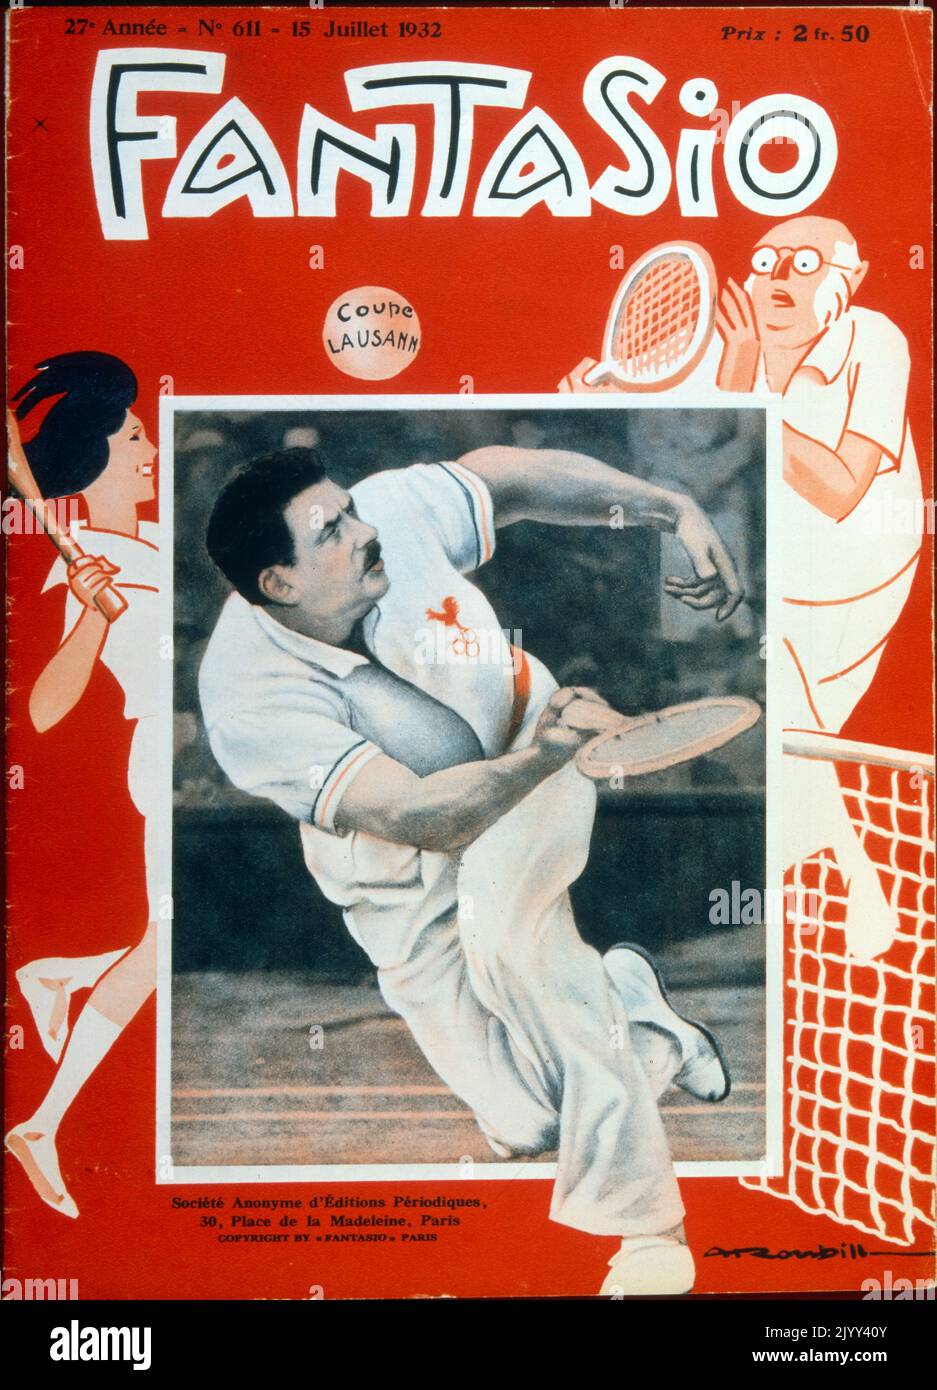 Französisches Zeitschriftencover mit Pierre Emile Gillou, (1880 - 1953) französischer Tennisspieler. Er war Kapitän der Davis Cup France Mannschaft während der 'vier Musketiere' Periode. Er war Kapitän der französischen Mannschaft, die den Davis Cup von 1927 bis 1932 gewann. 1930 wurde er zum Präsidenten des französischen Tennisverbands (FFT) gewählt. Stockfoto